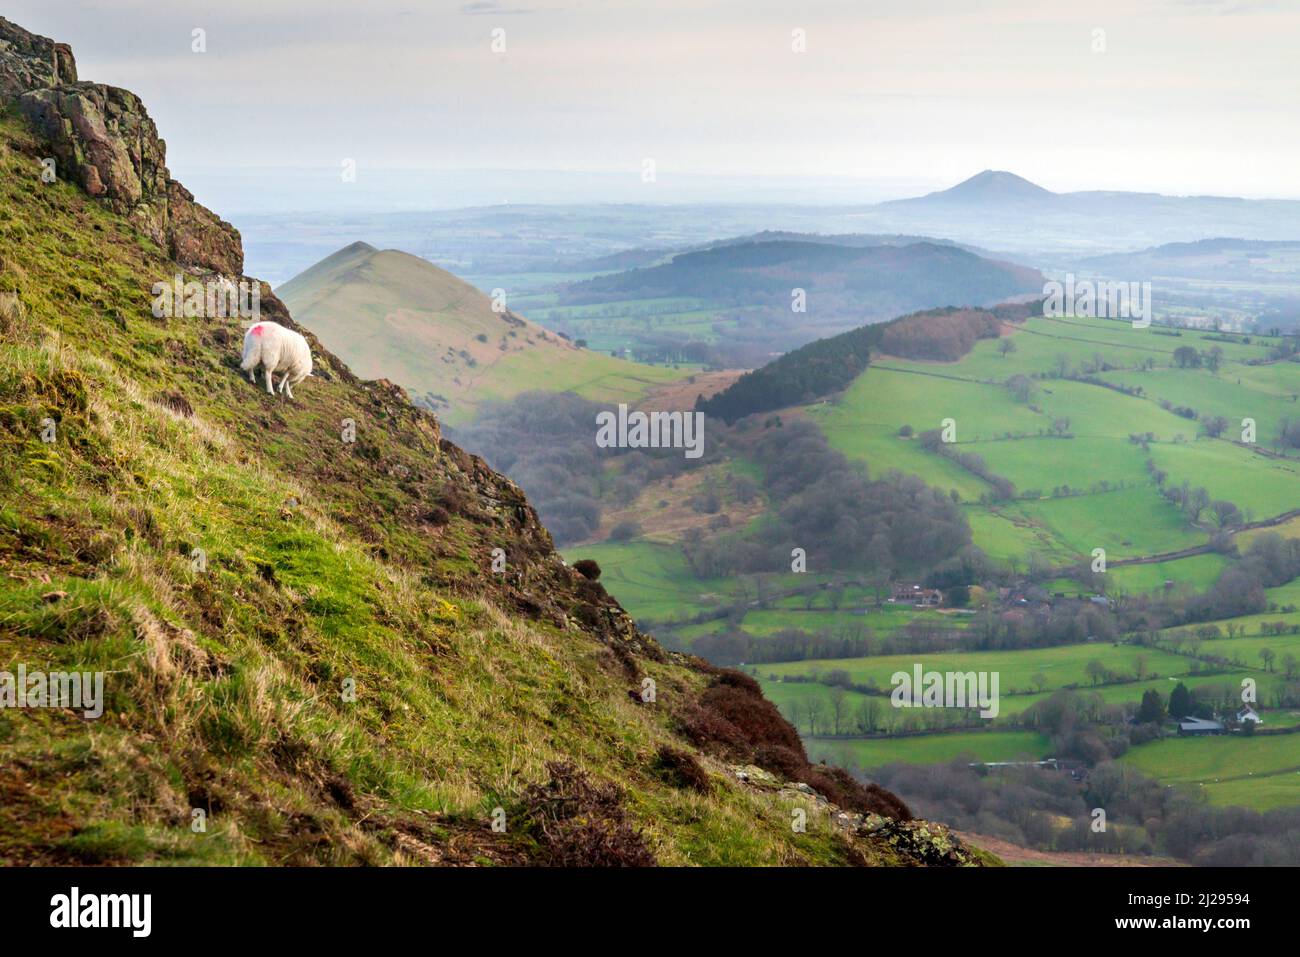 Un solo agnello al mattino presto, nutrendo sulla collina erbosa, rocciosa, al mattino presto contro una vista della campagna e colline distanti. Foto Stock